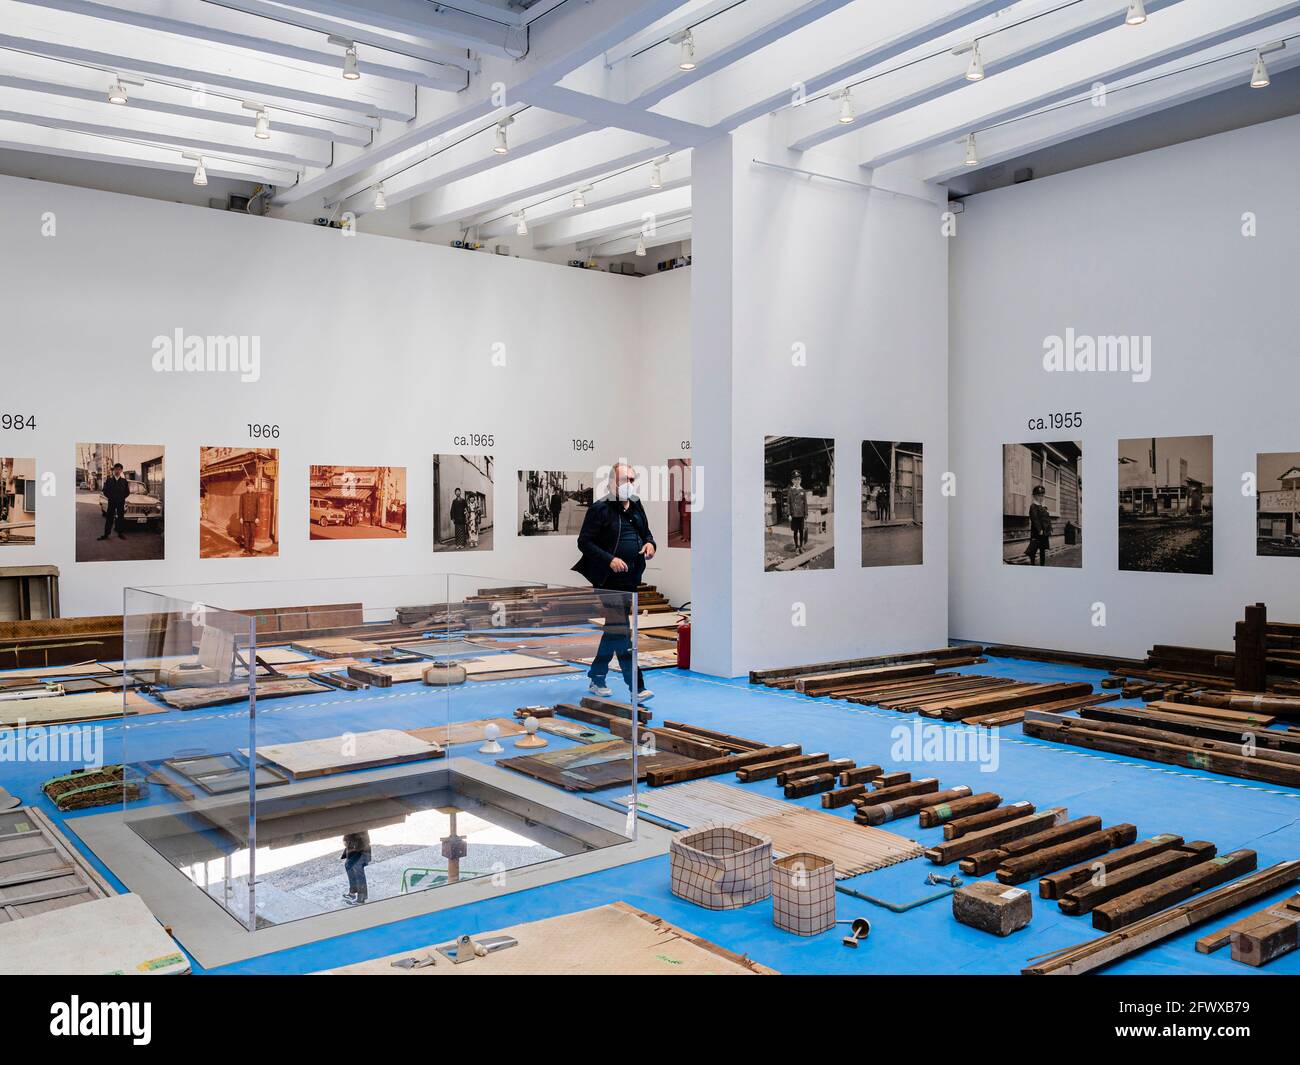 Padiglione Giapponese. 17° Biennale di architettura Venezia, Venezia, Italia. Architetto: Vari, 2021. Foto Stock